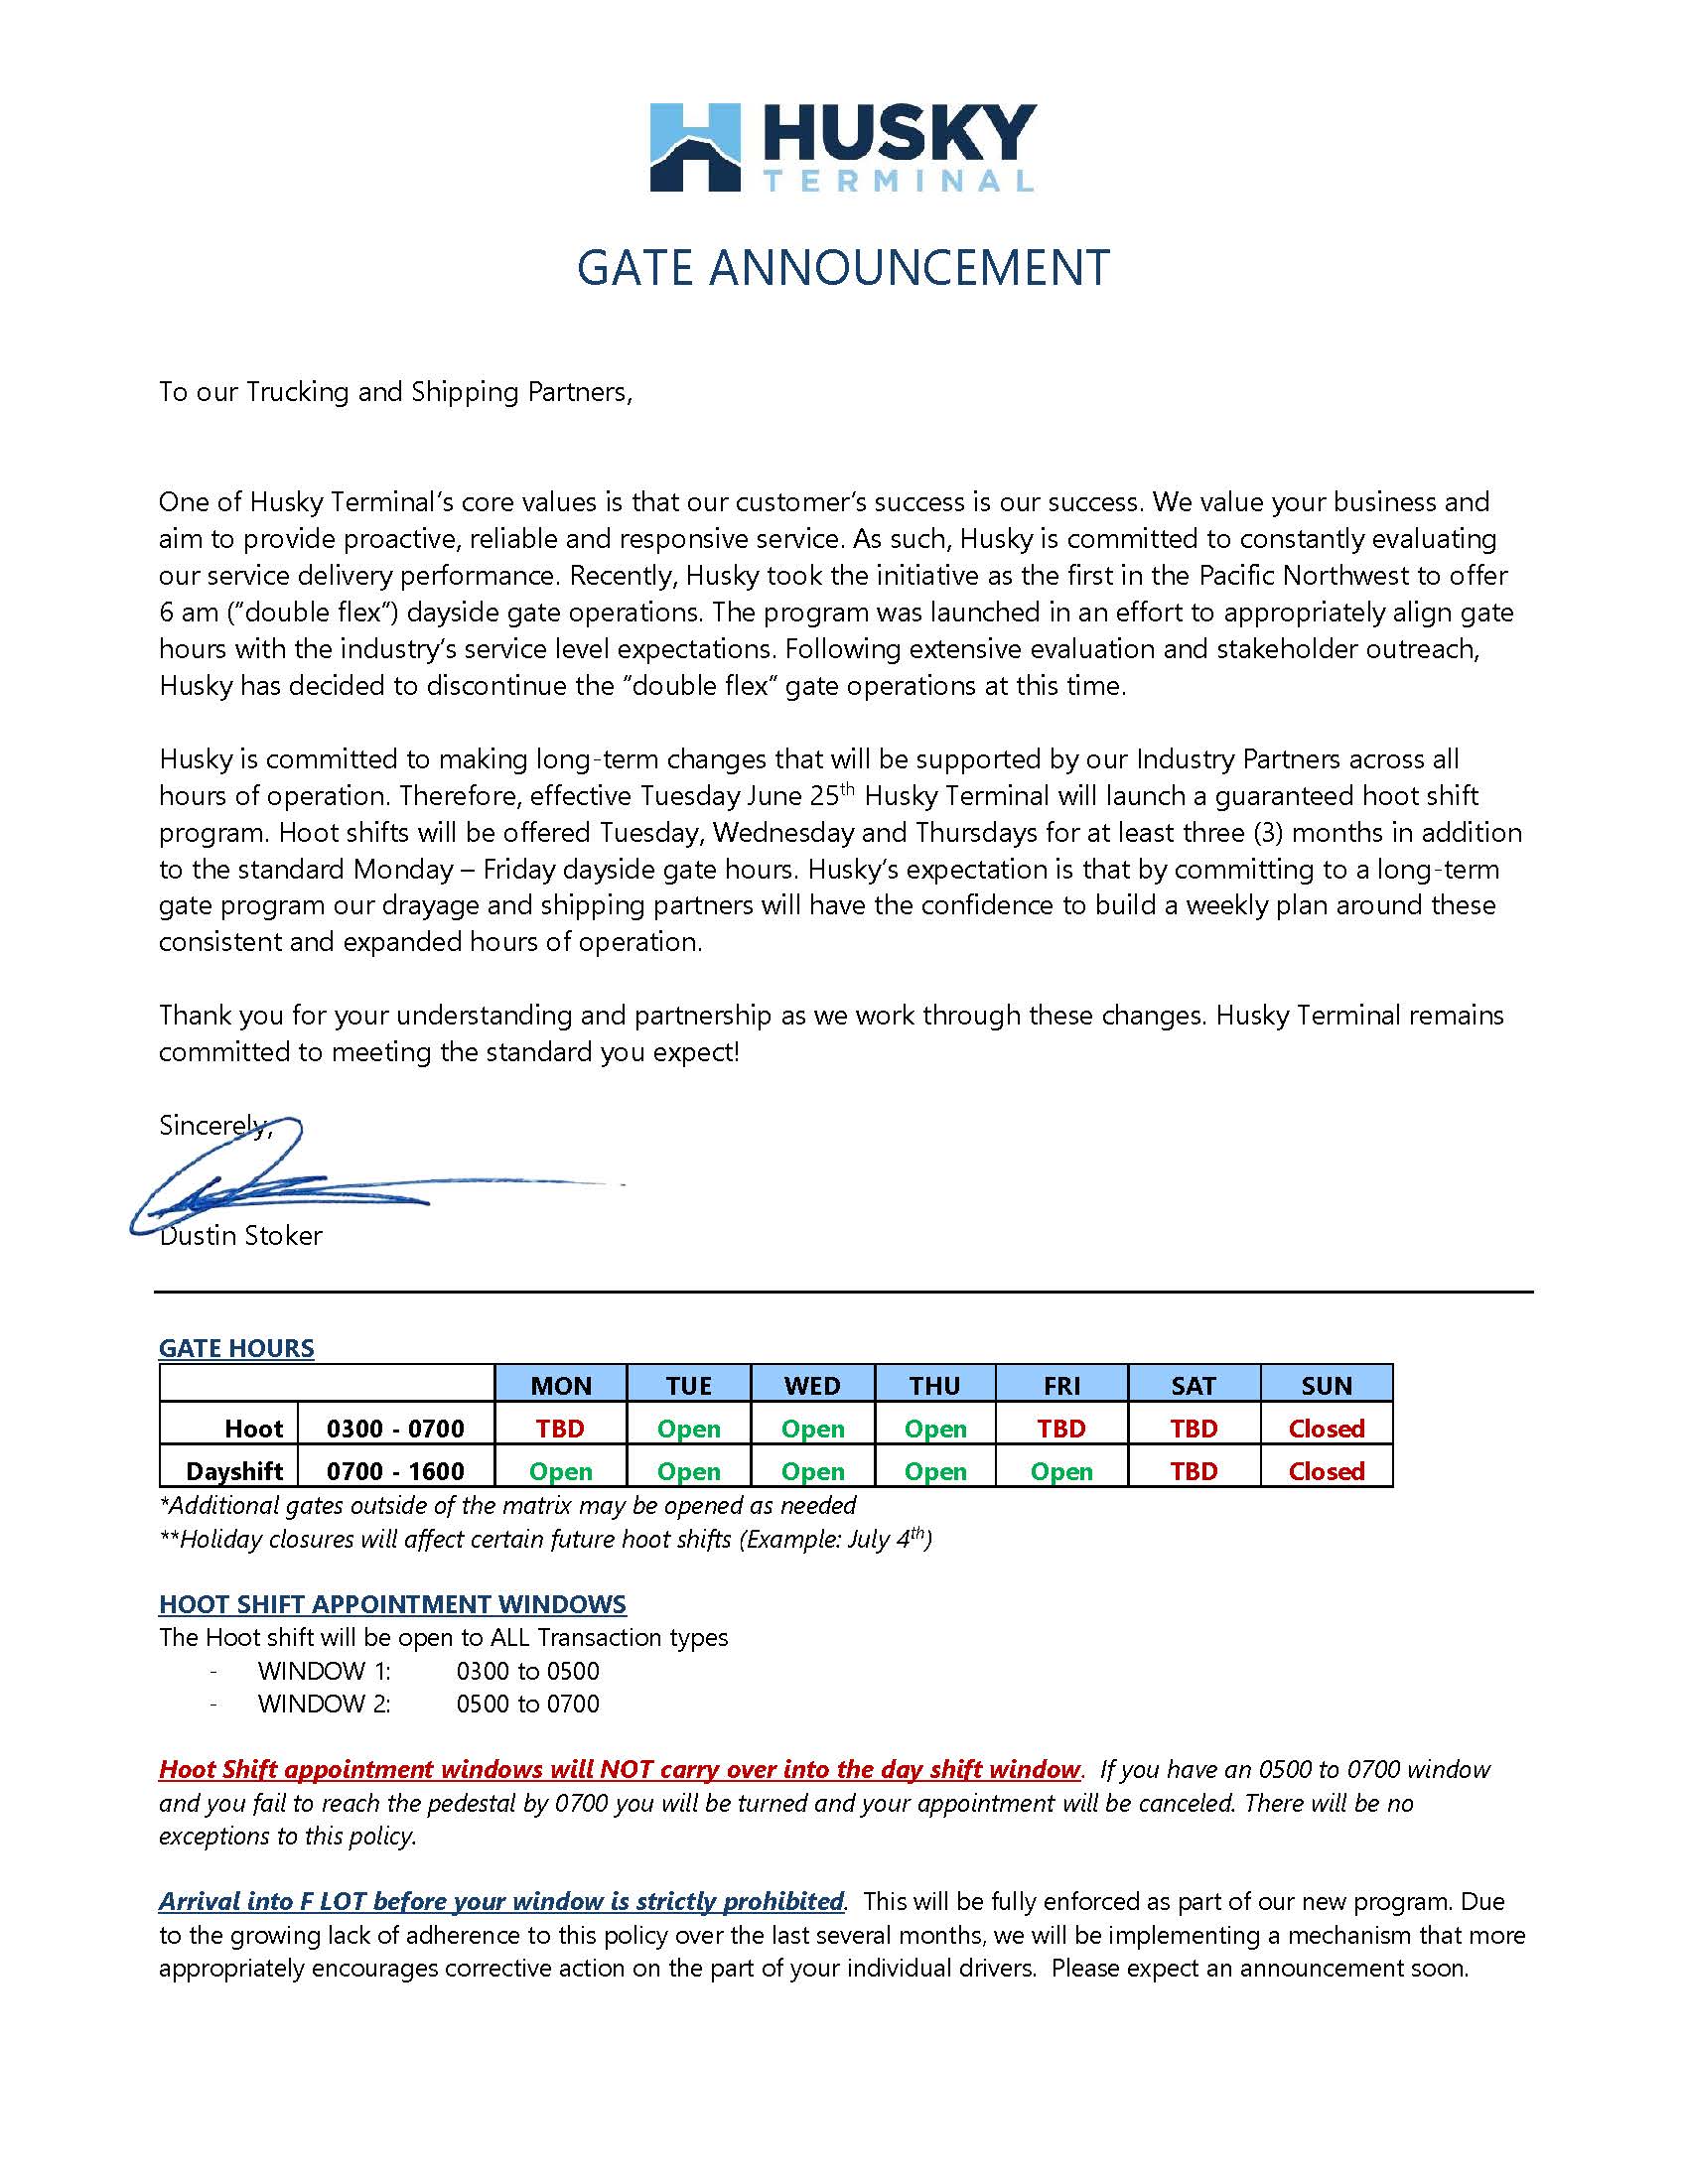 Husky Terminal Hoot Gate Announcement